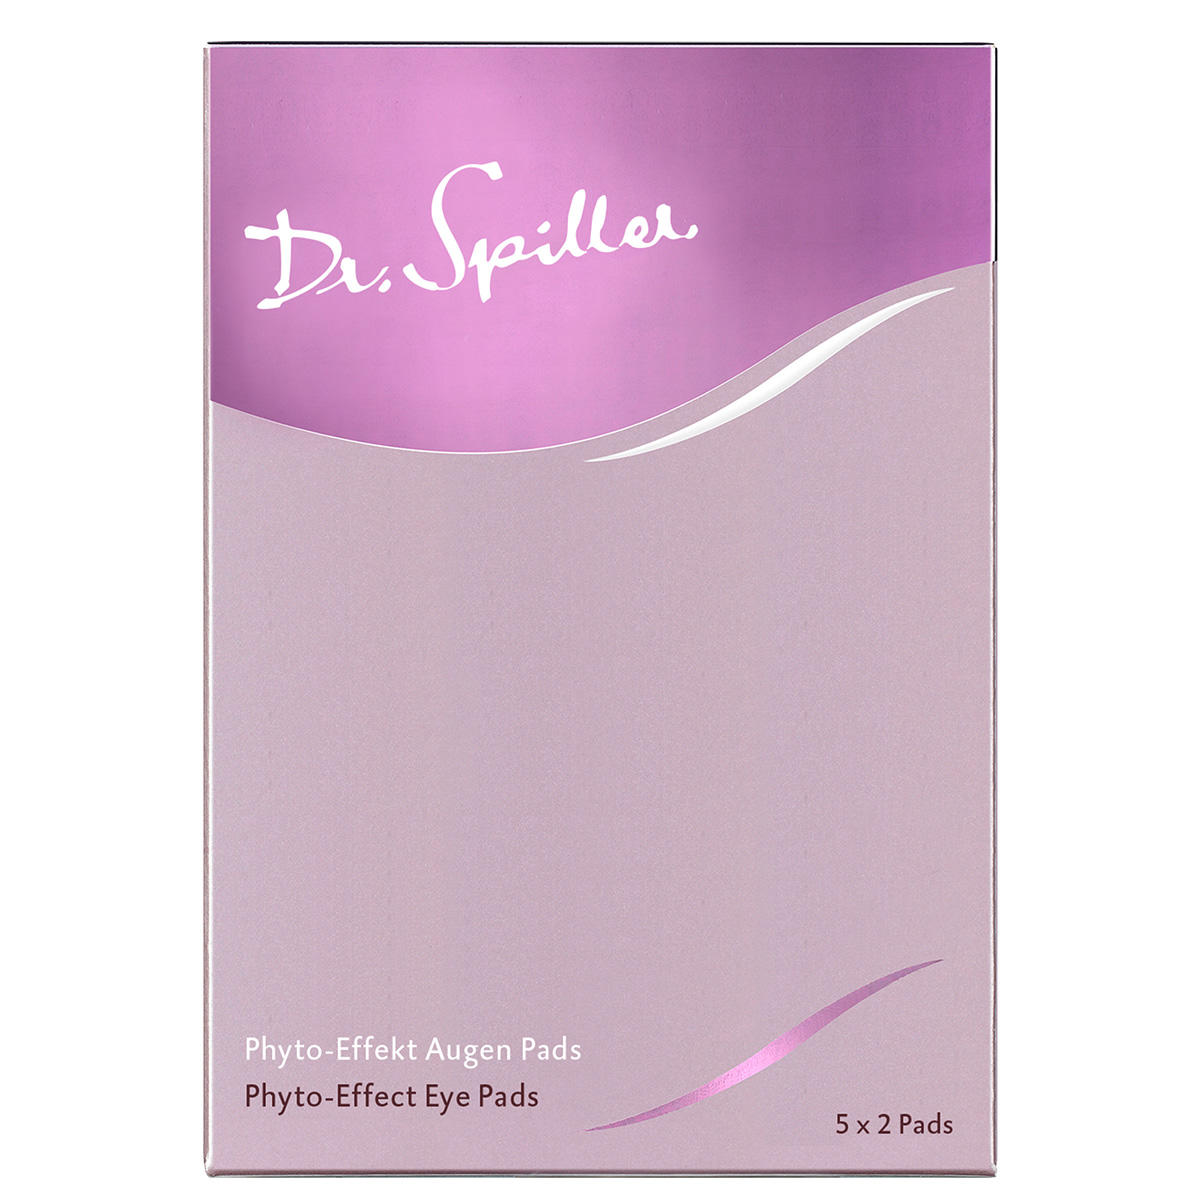 Dr. Spiller Phyto-Effect Oog Pads 10 Stück - 3